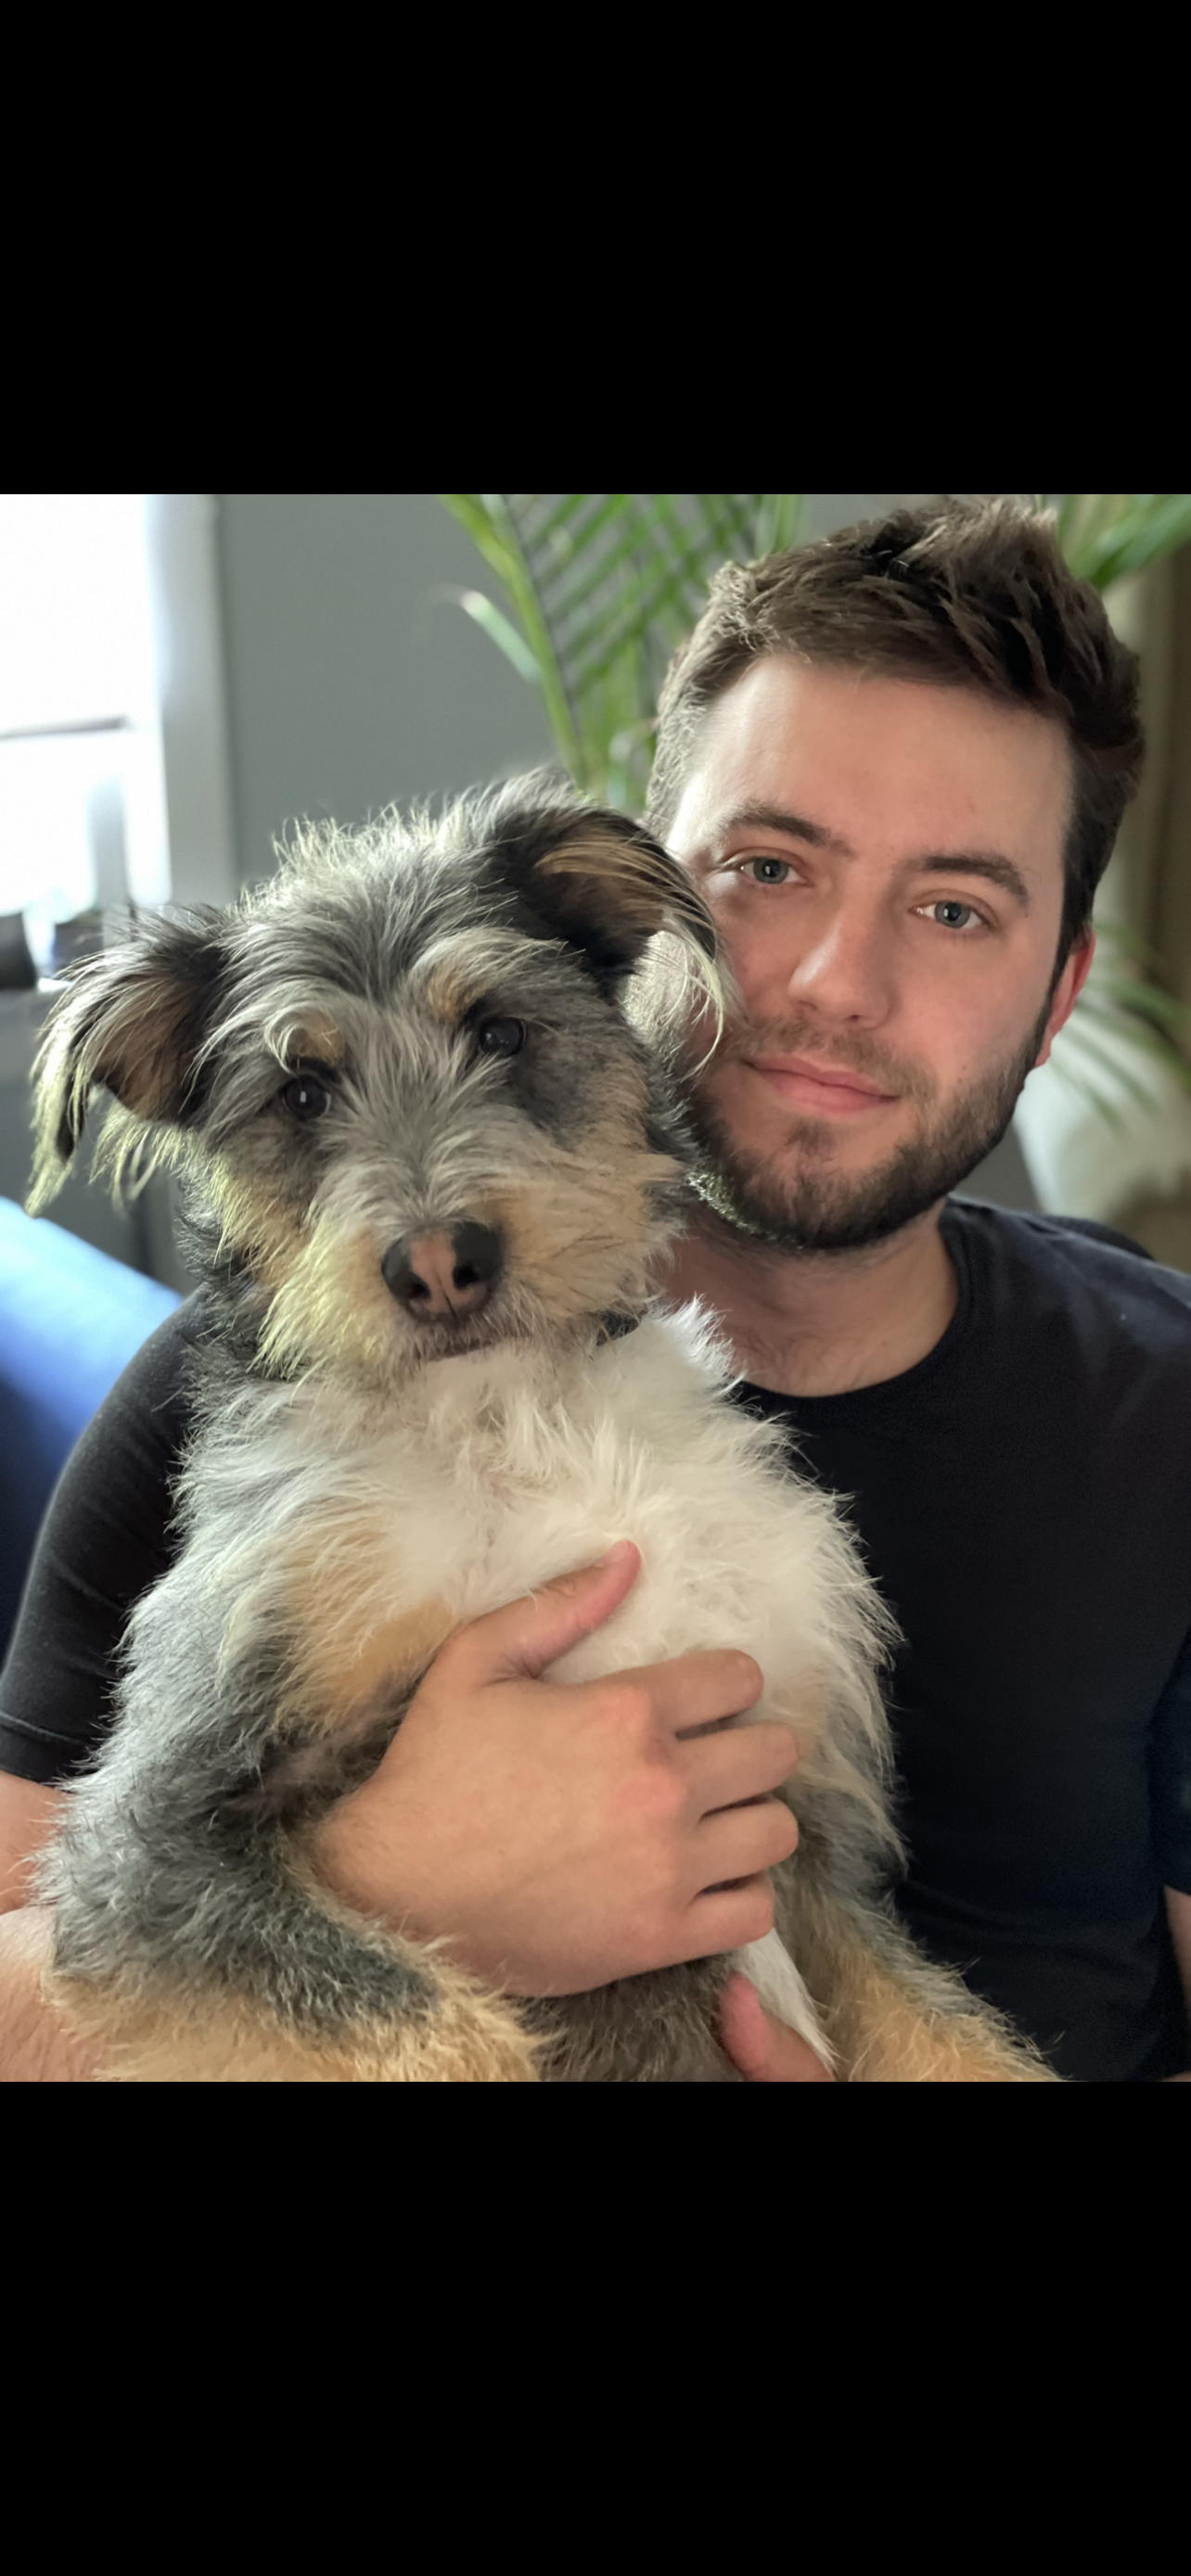 Brandon with his dog